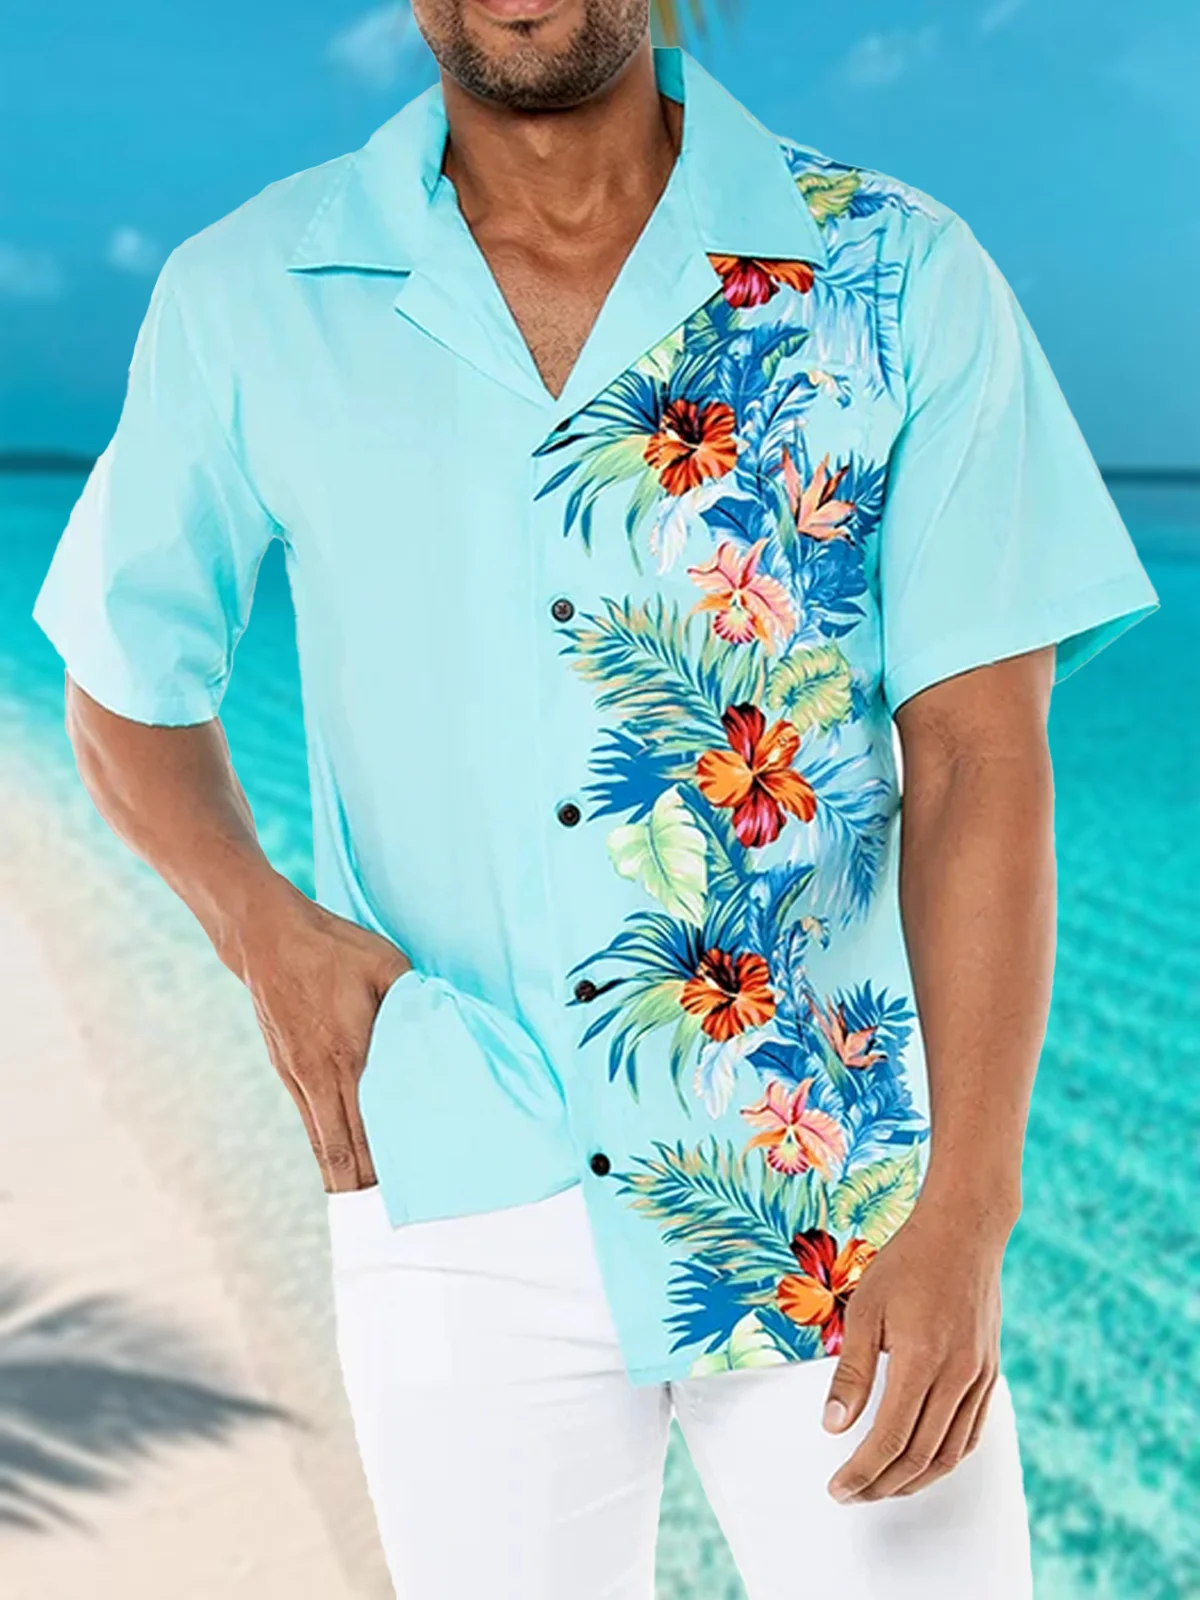 Hardaddy Cotton Tropical Floral Aloha Shirt